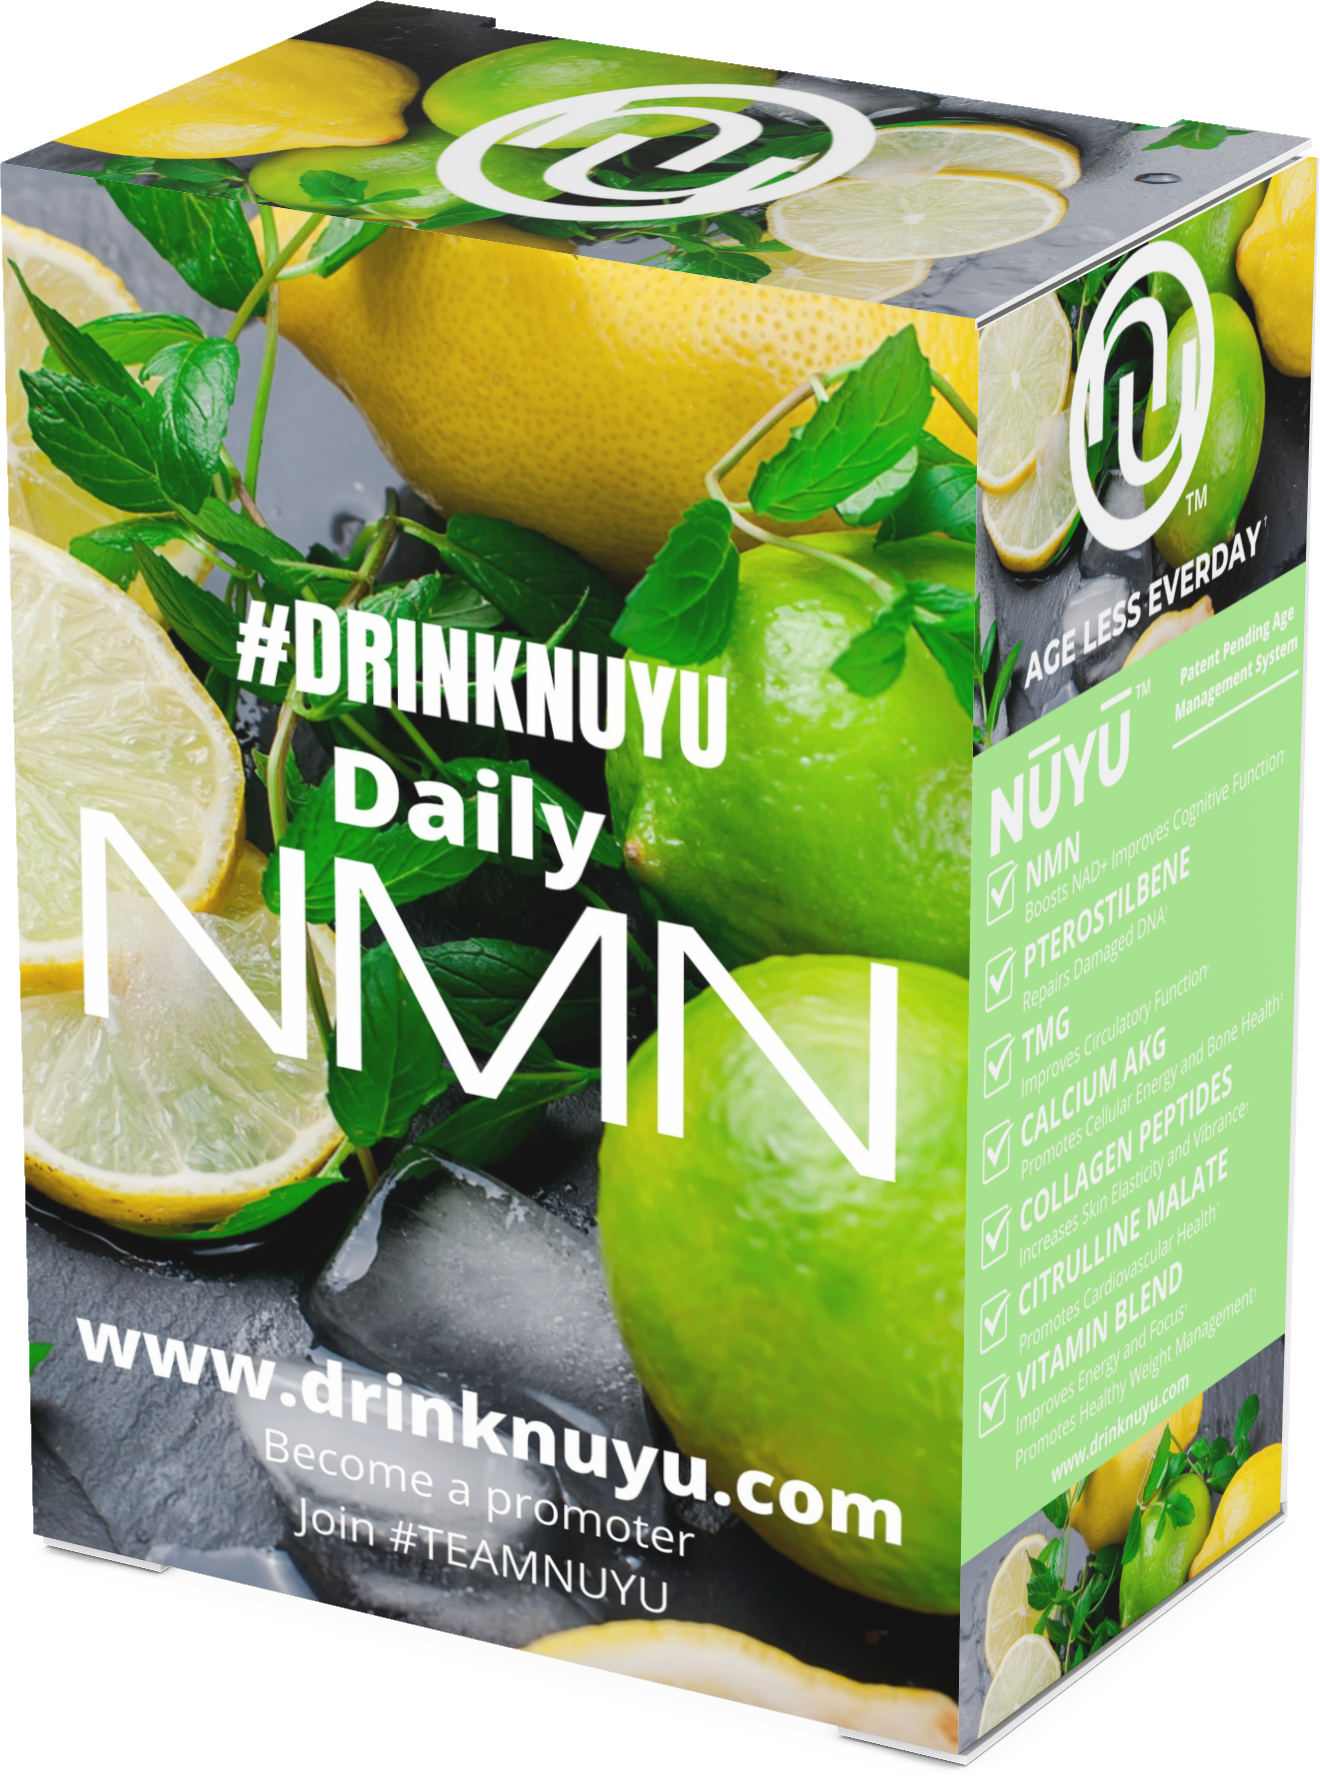 NŪYŪ Daily NMN™ Longevity Drink-Lemon Lime